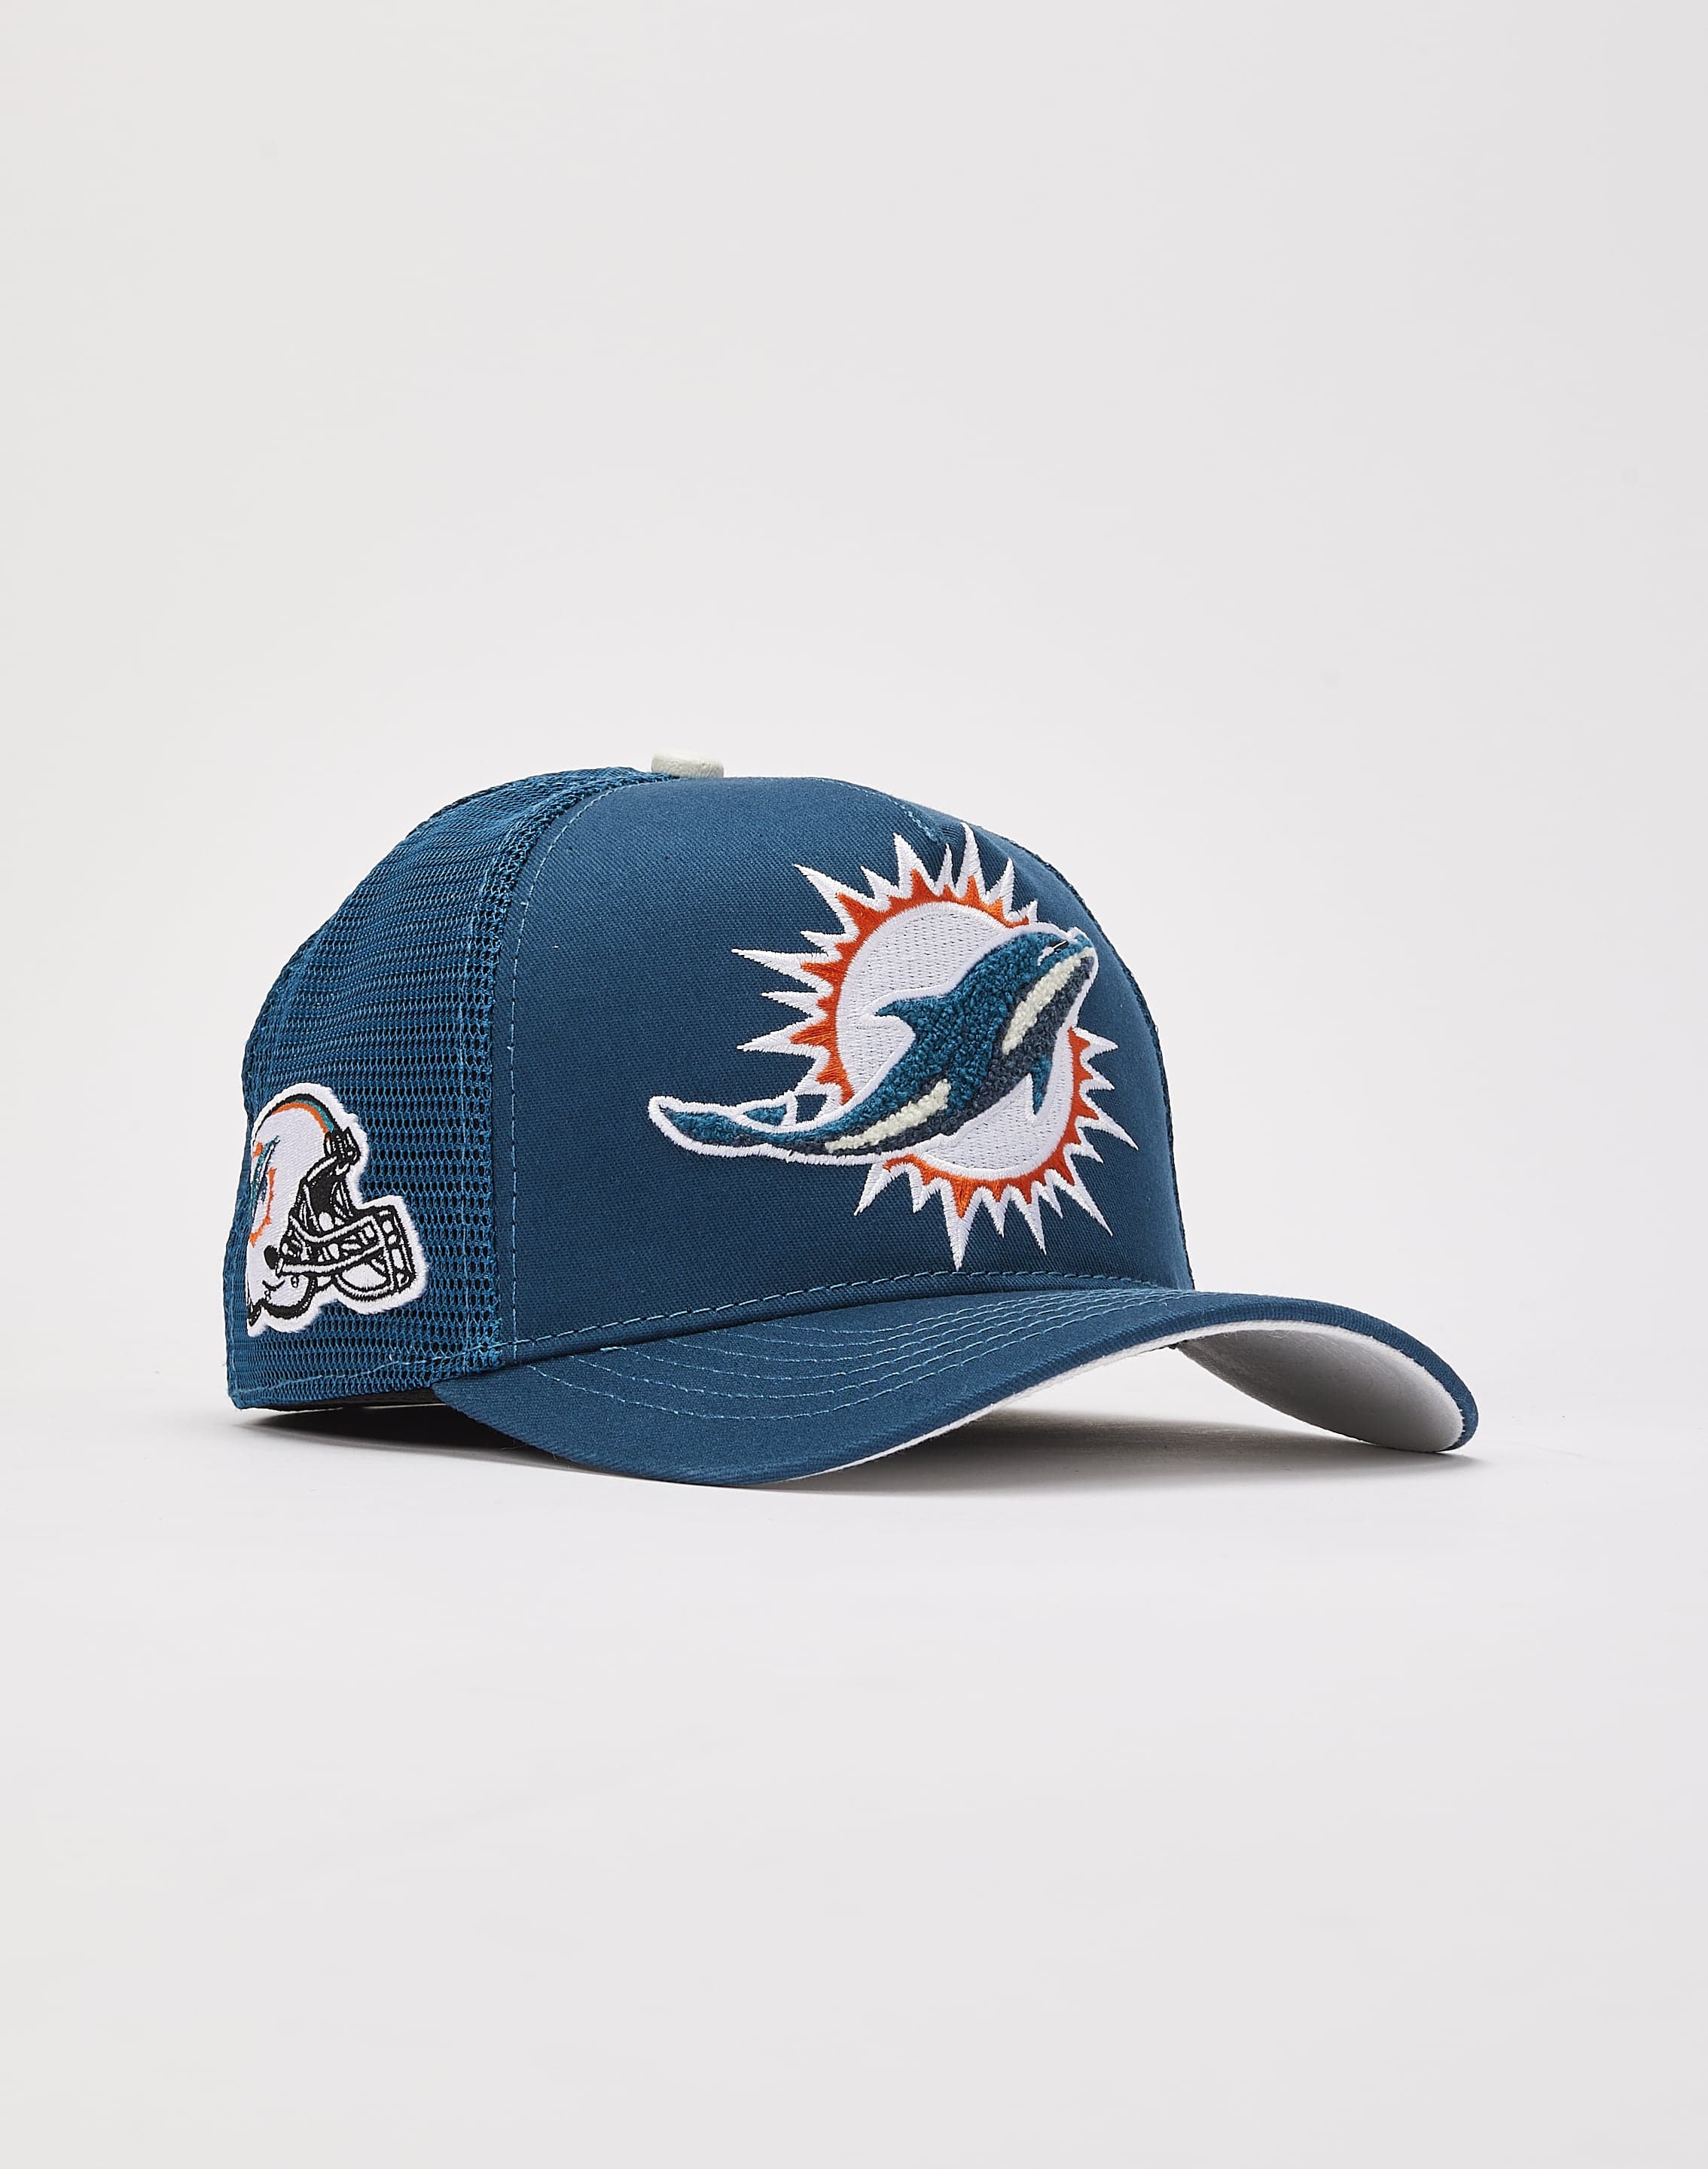 Pro Standard Memphis Grizzlies Trucker Hat – DTLR